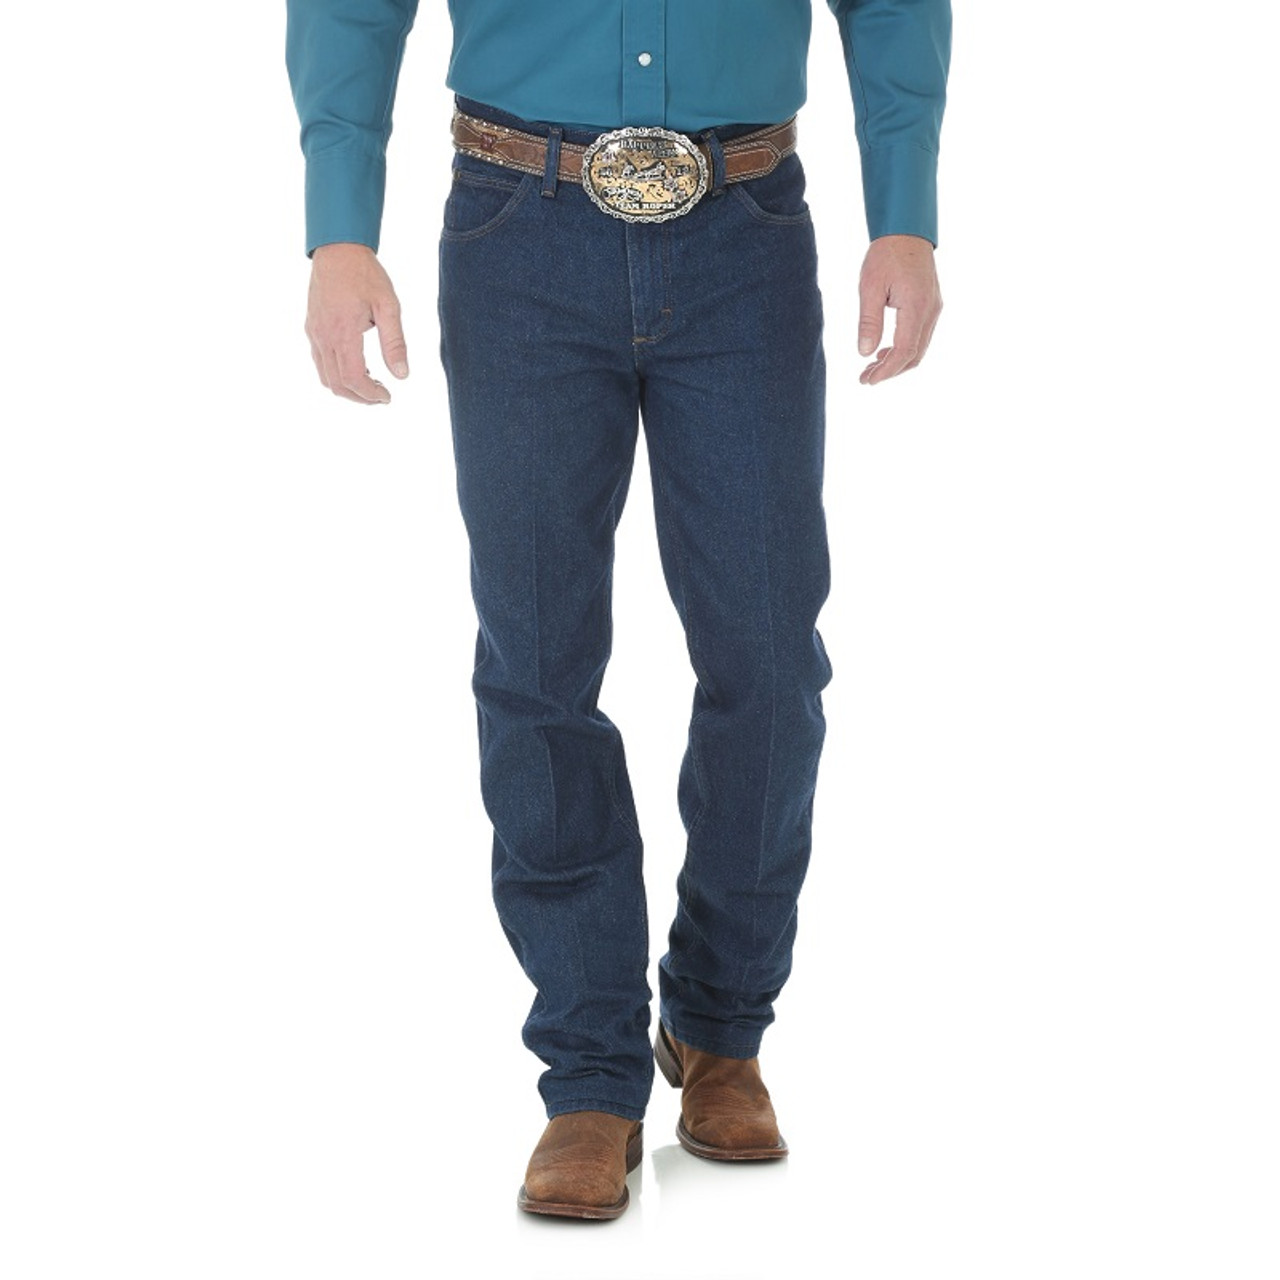 Wrangler Men's Premium Performance Cowboy Cut Slim Fit Jeans